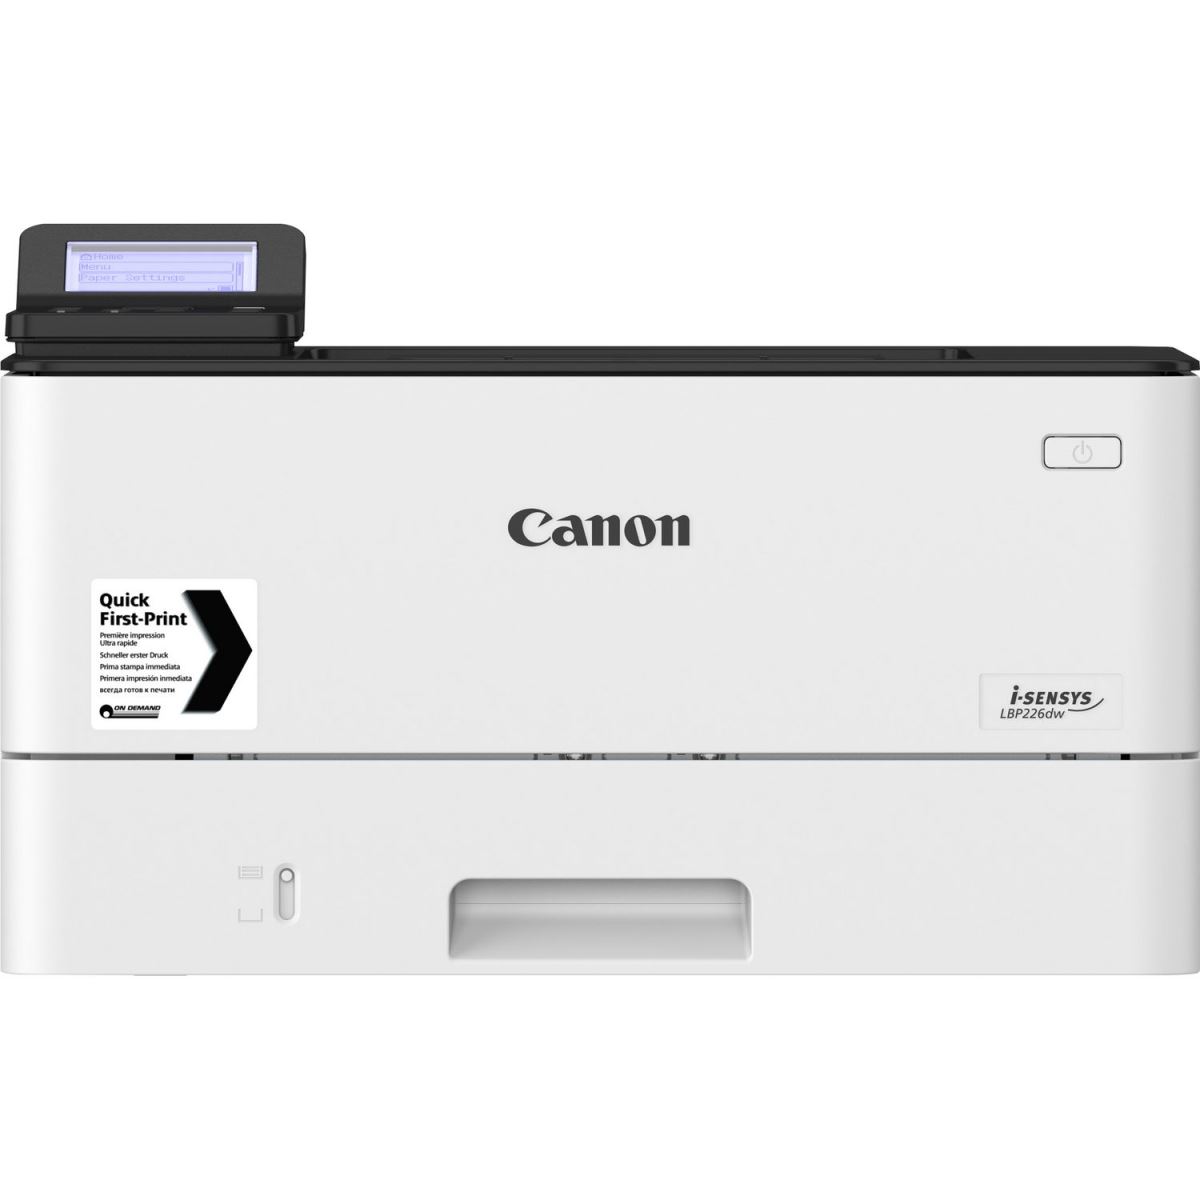 Canon LBP 226dw là máy in văn phòng tốc độ cao và có chức năng in hai mặt tự động.